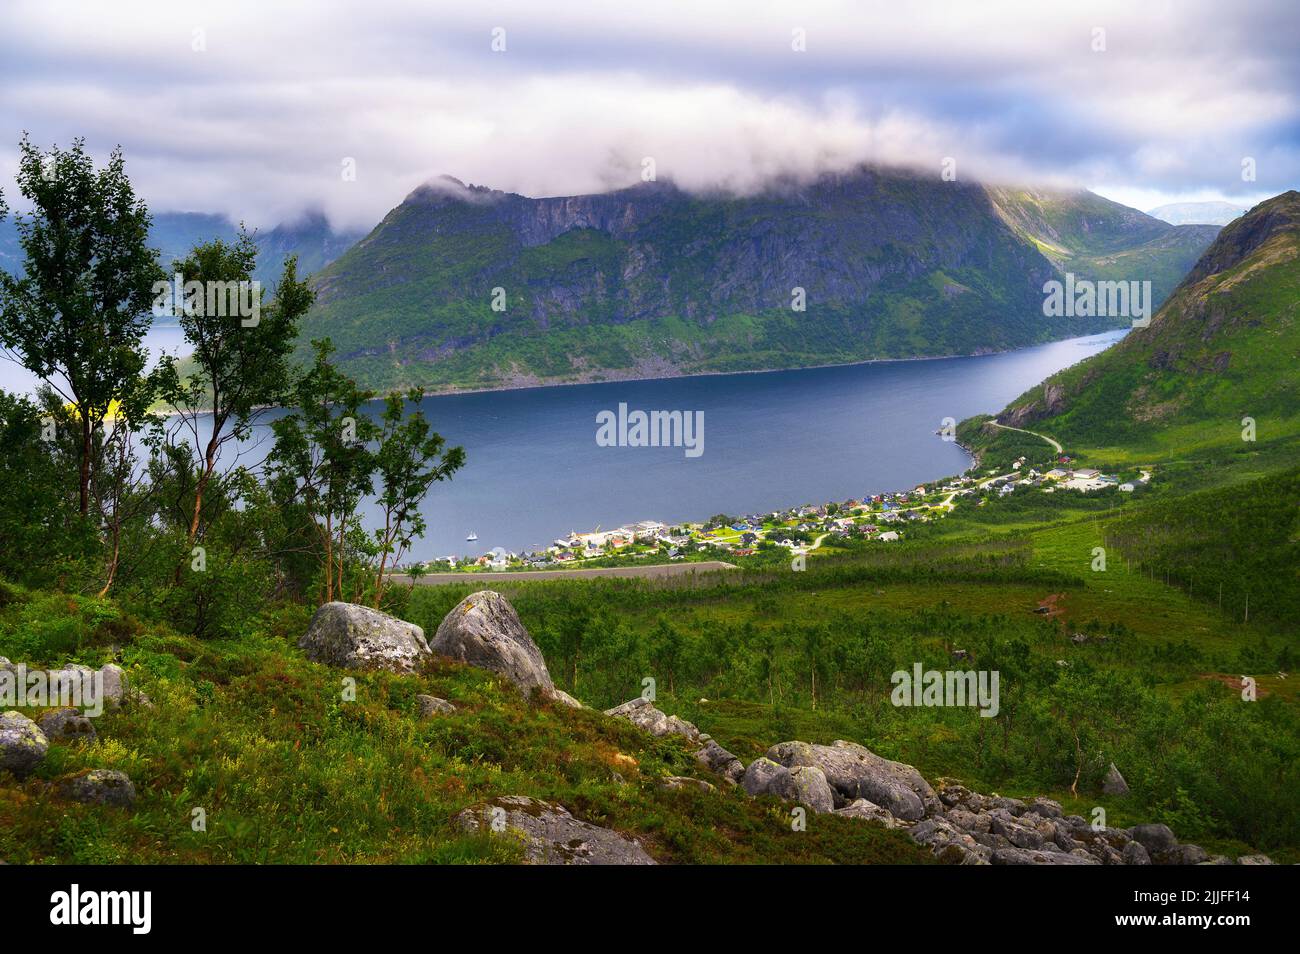 Fjordgard villaggio da Hesten sentiero per Segla montagna sull'isola di Senja, Norvegia Foto Stock